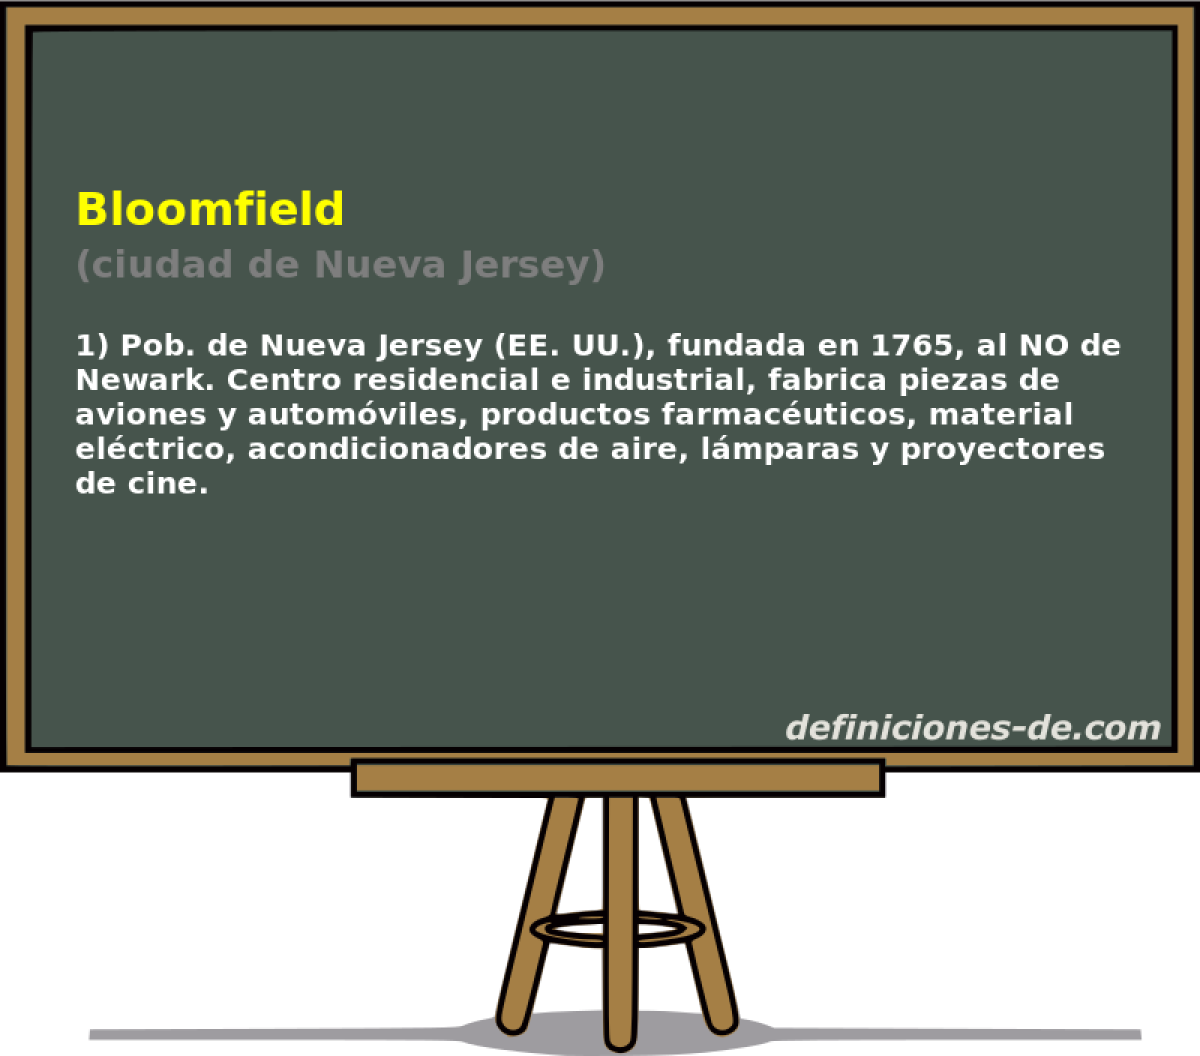 Bloomfield (ciudad de Nueva Jersey)